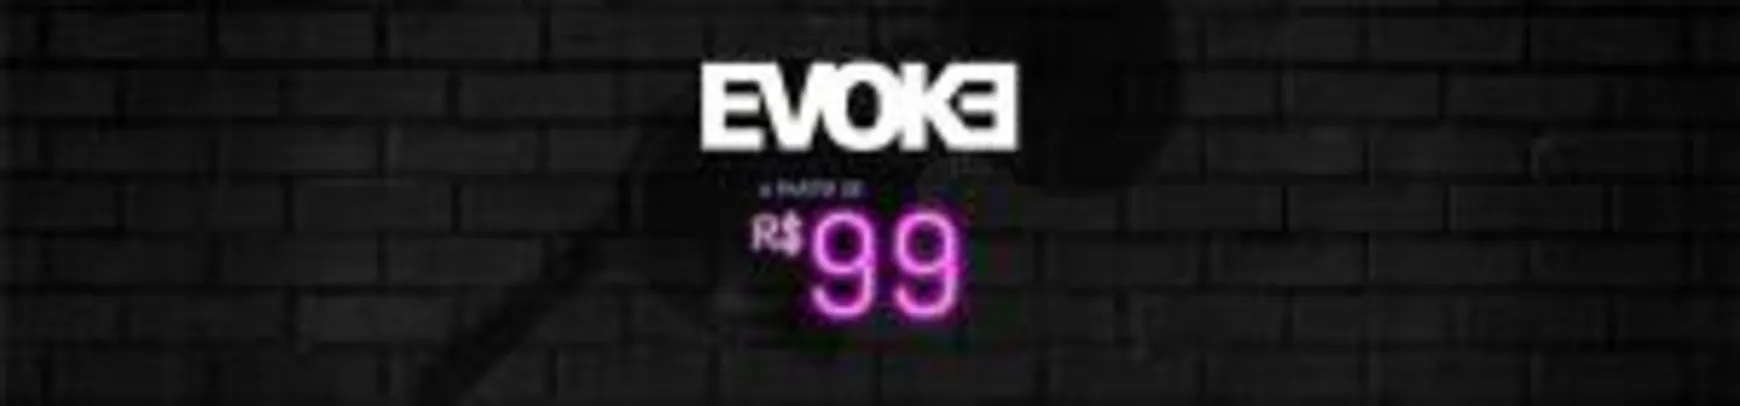 EVOKE A PARTIR DE R$99.00